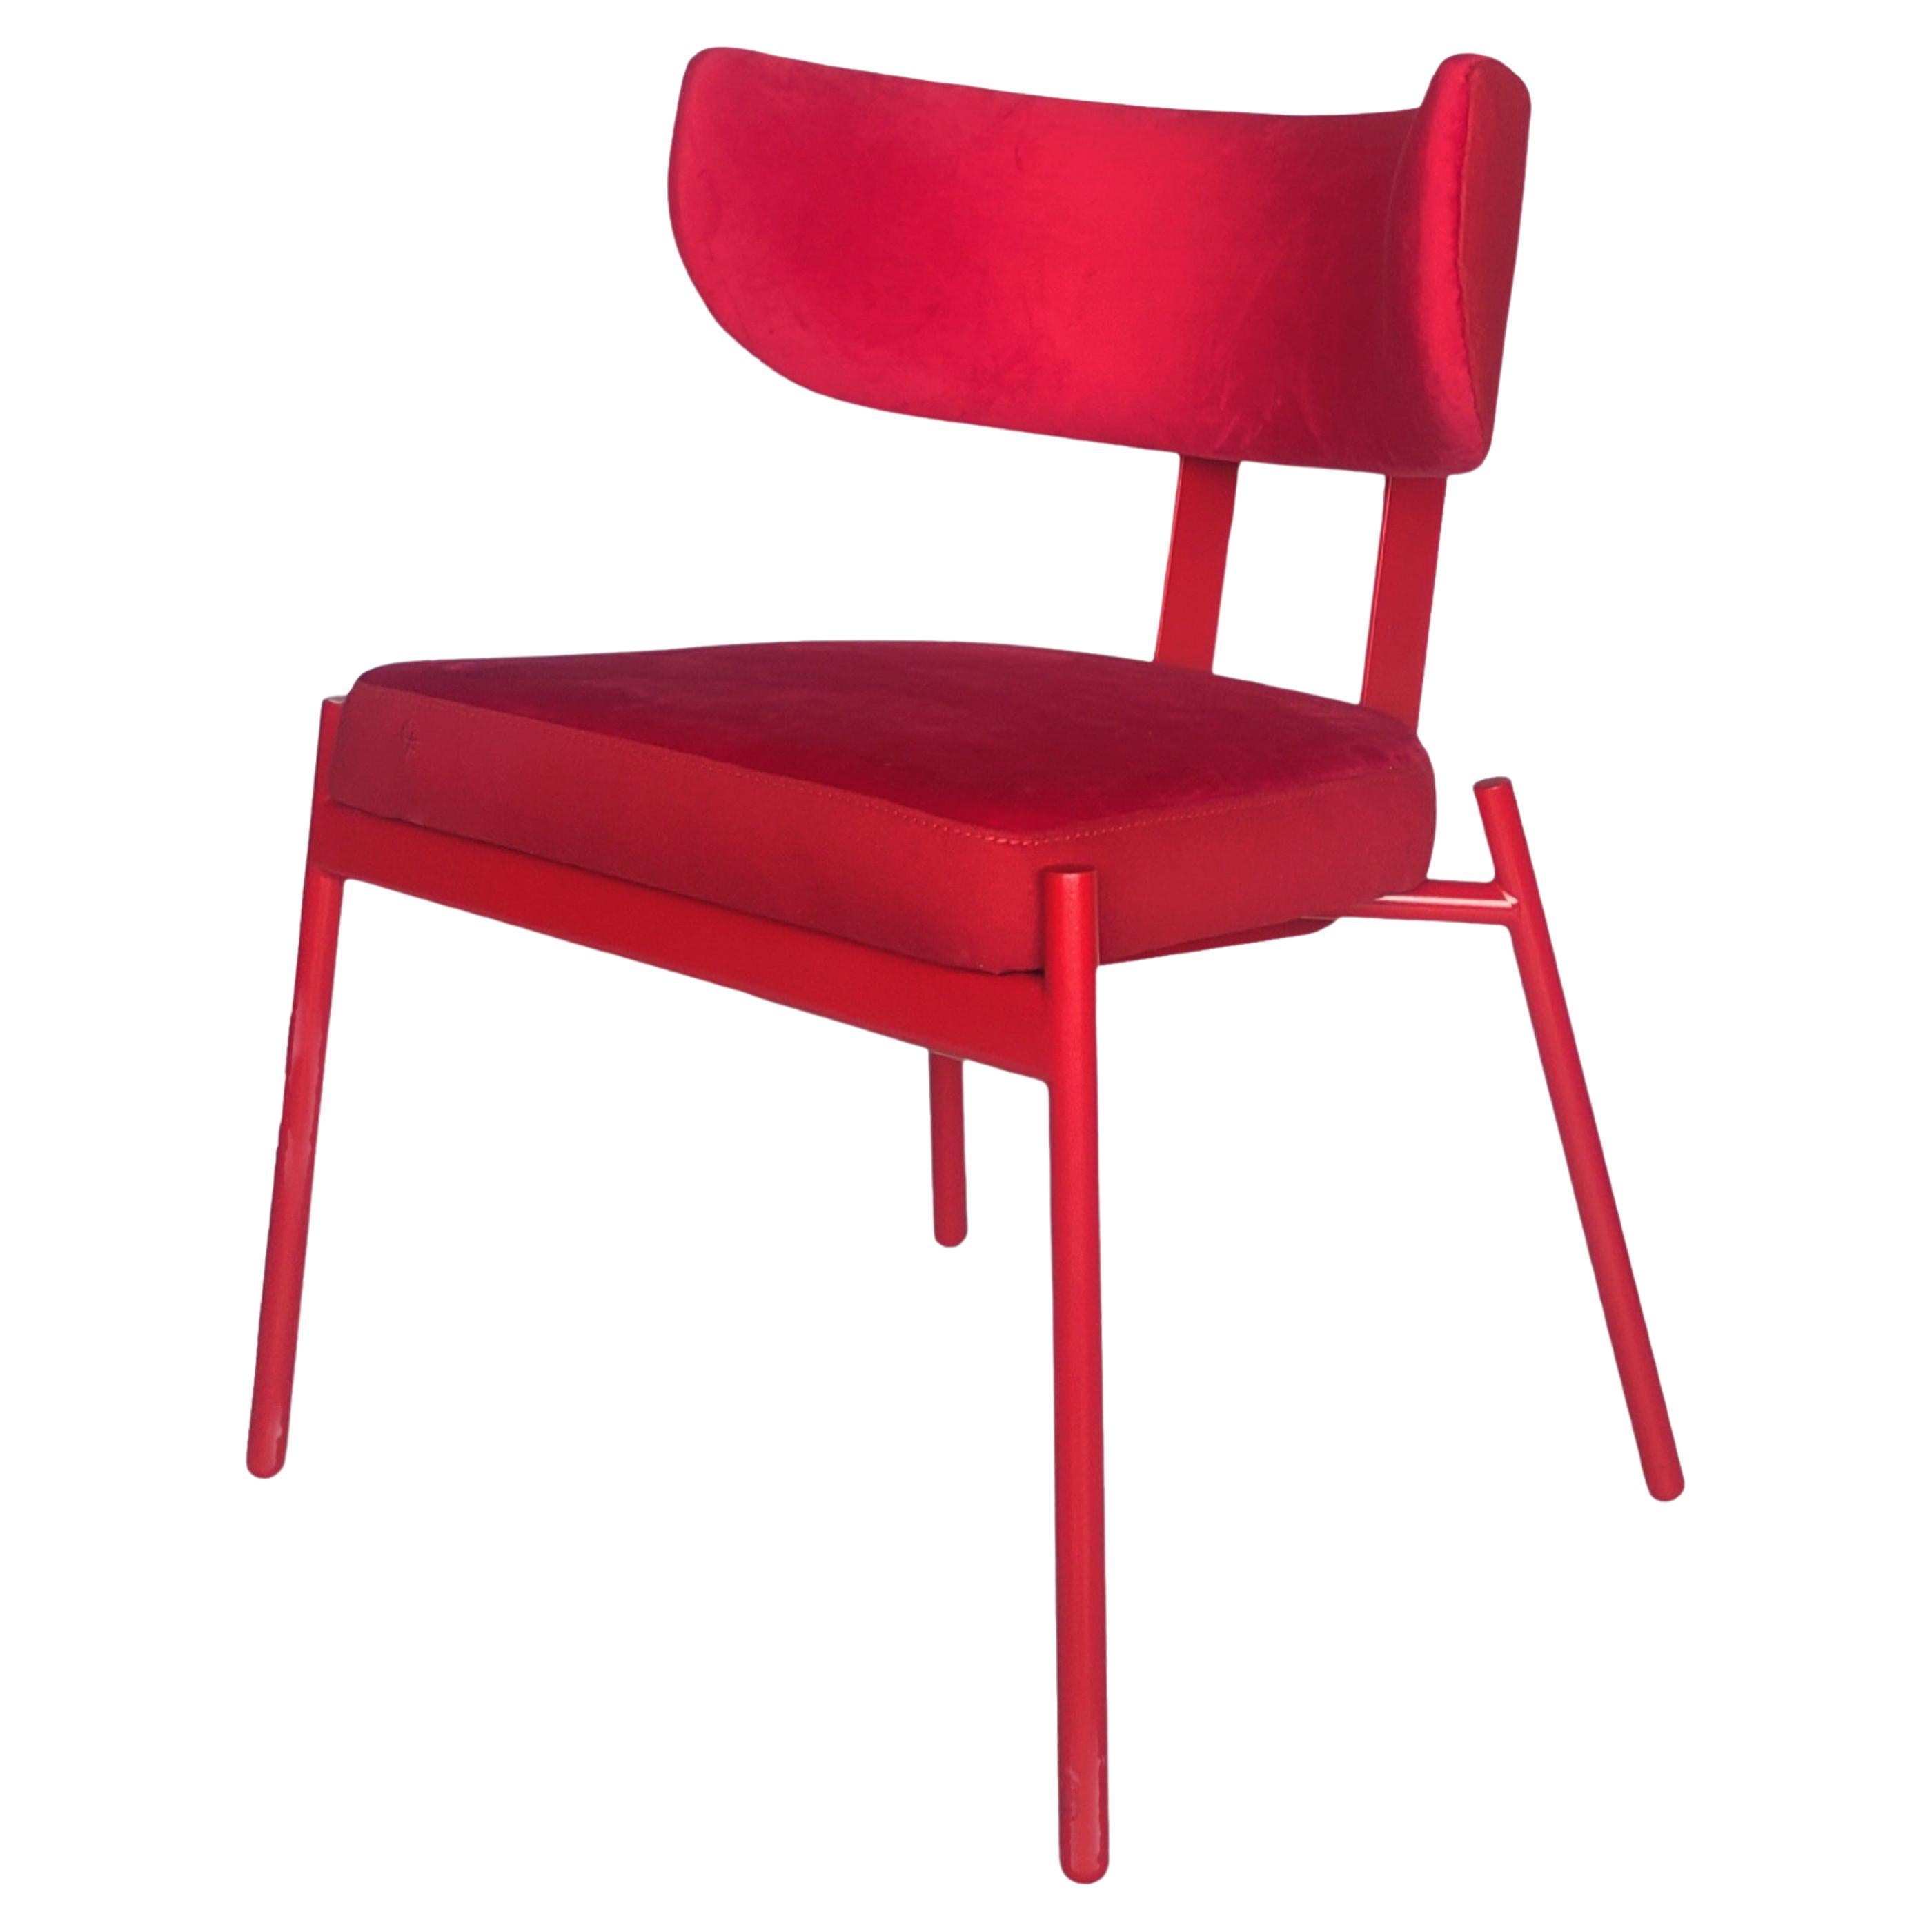 Red Love chair by Gabriel Freitas